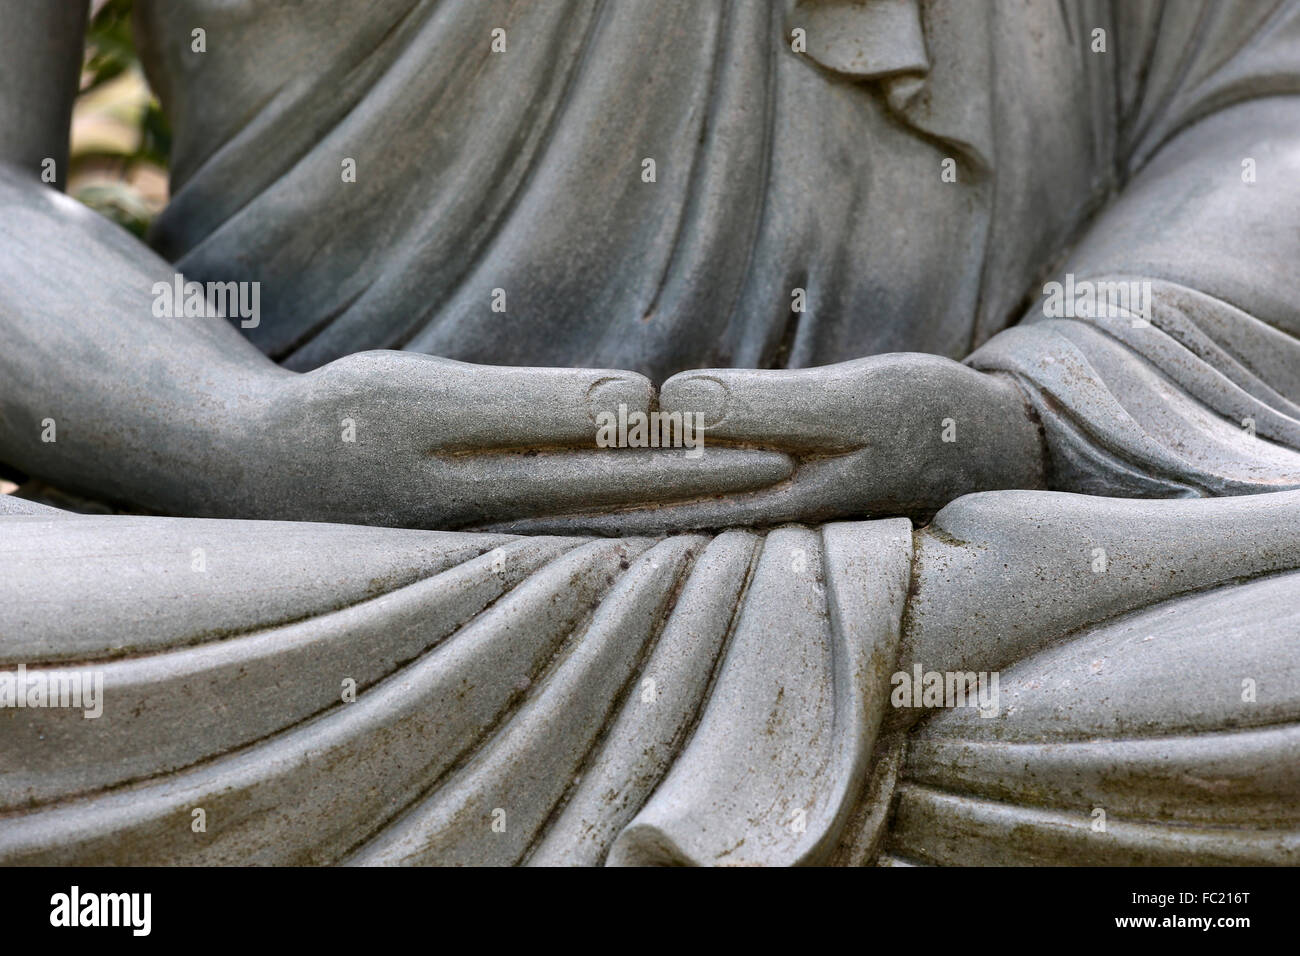 Hong Hien Tu tempio. Statua di Buddha. Siddharta Gautama. Foto Stock